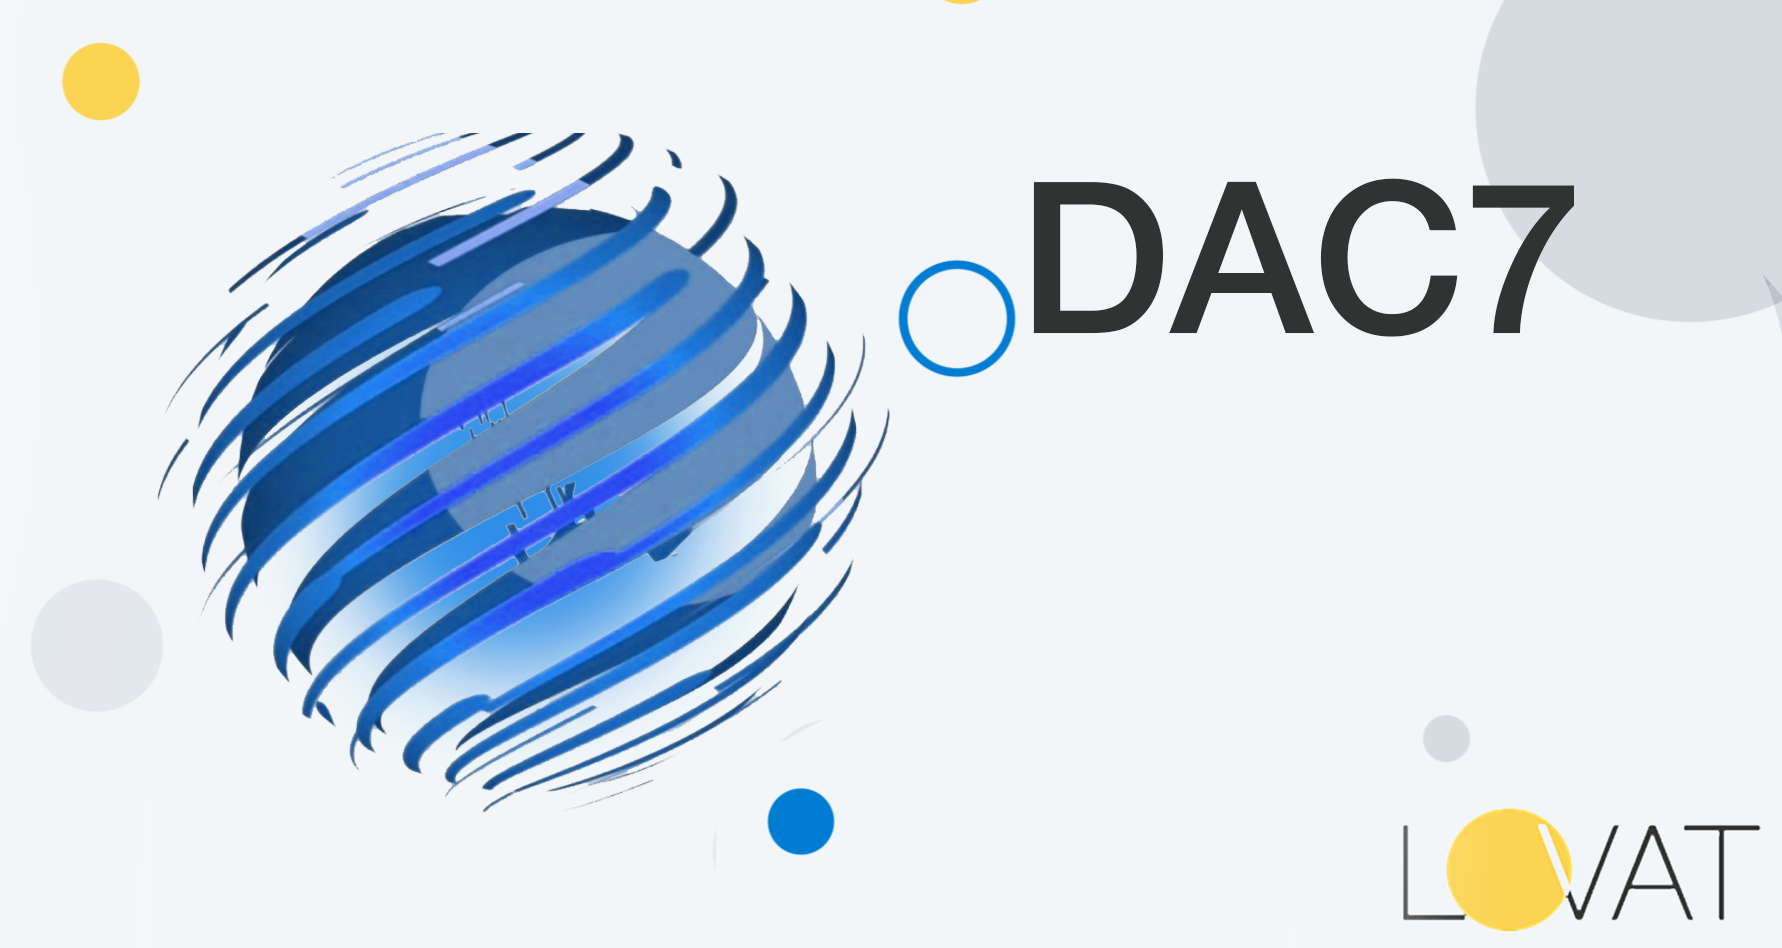 DAC7 – die neue Art der Registrierung für Online-Marktplätze